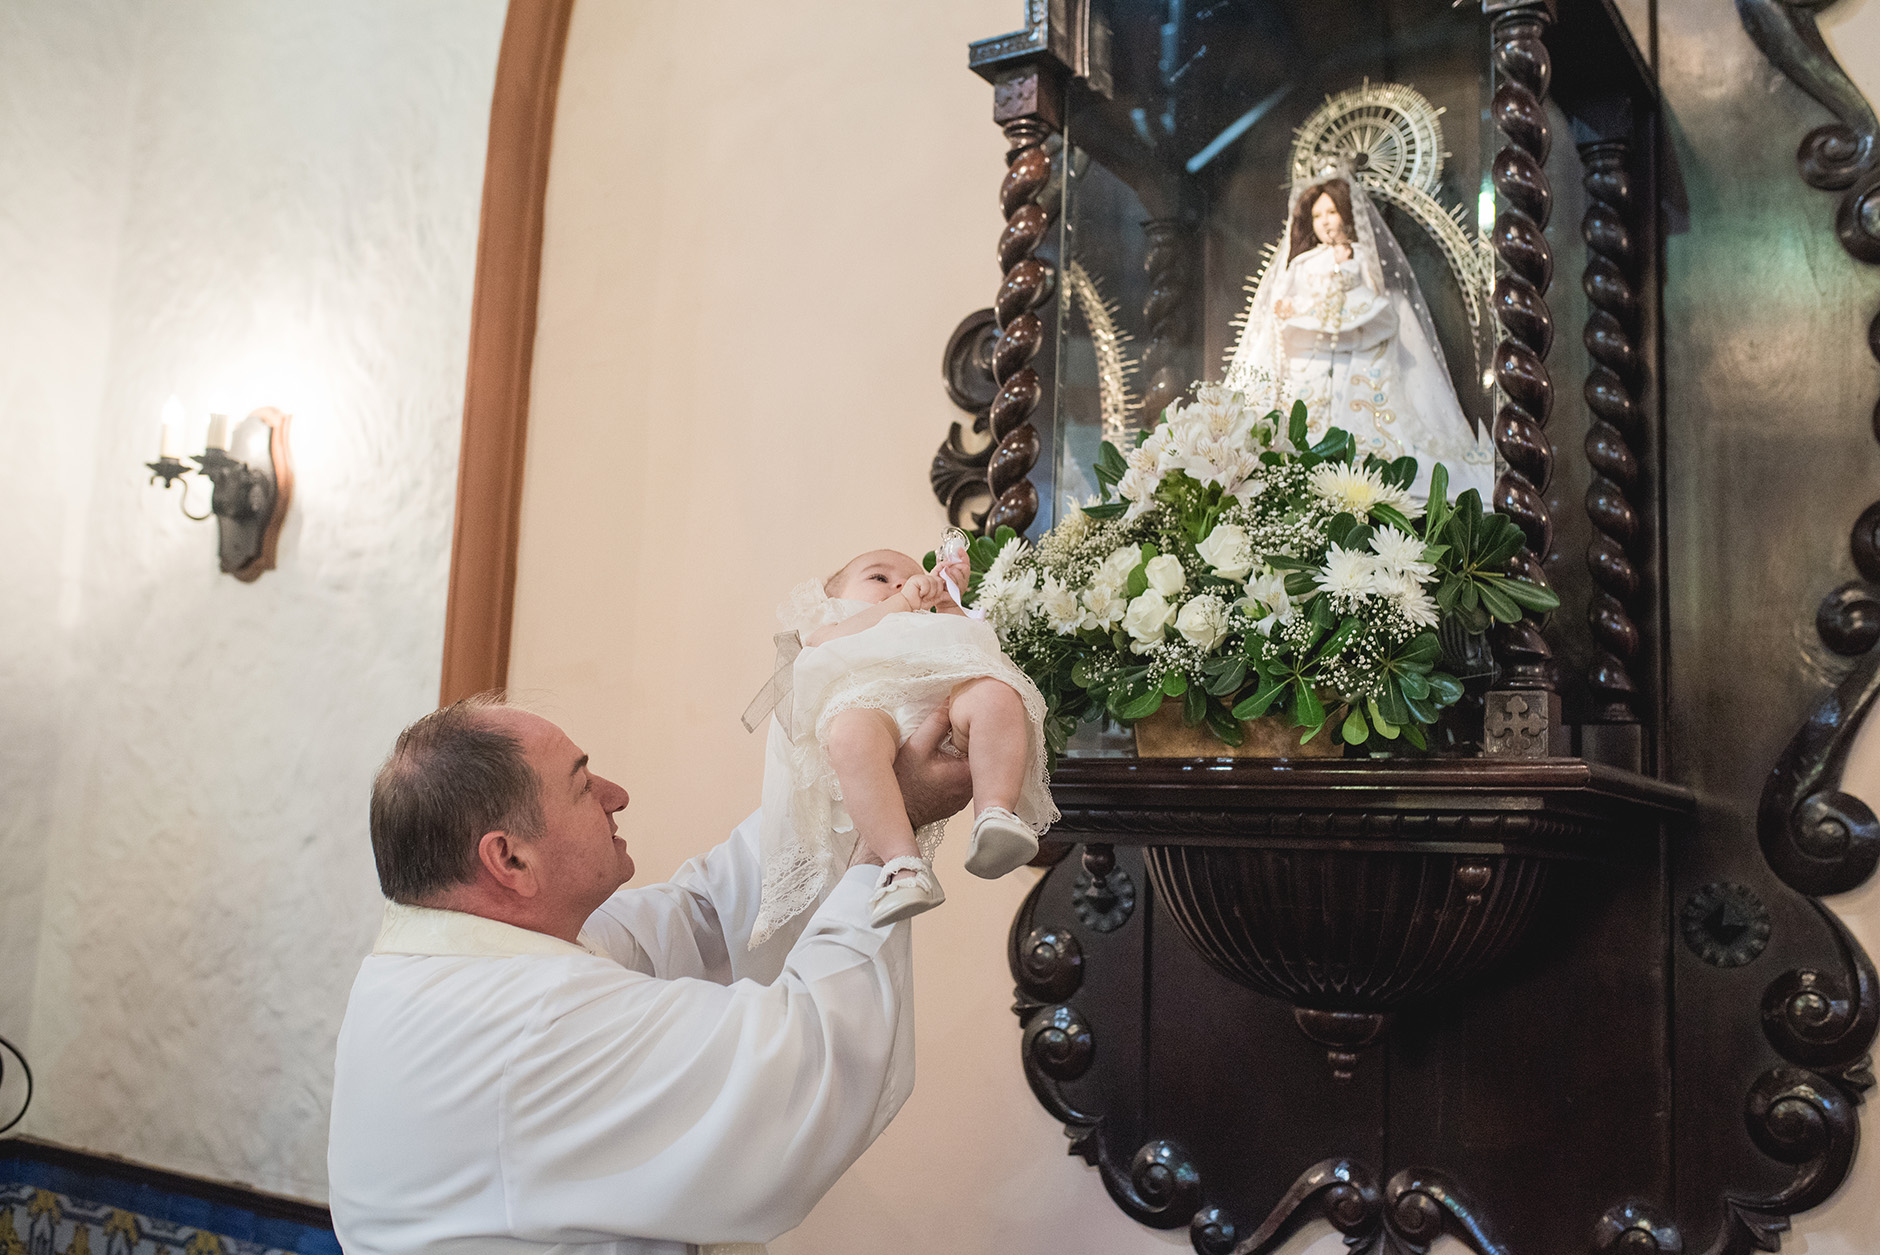 Fotos del bautismo de Lisa en Rosario realizadas por Bucle Fotografías Flor Bosio y Caro Clerici